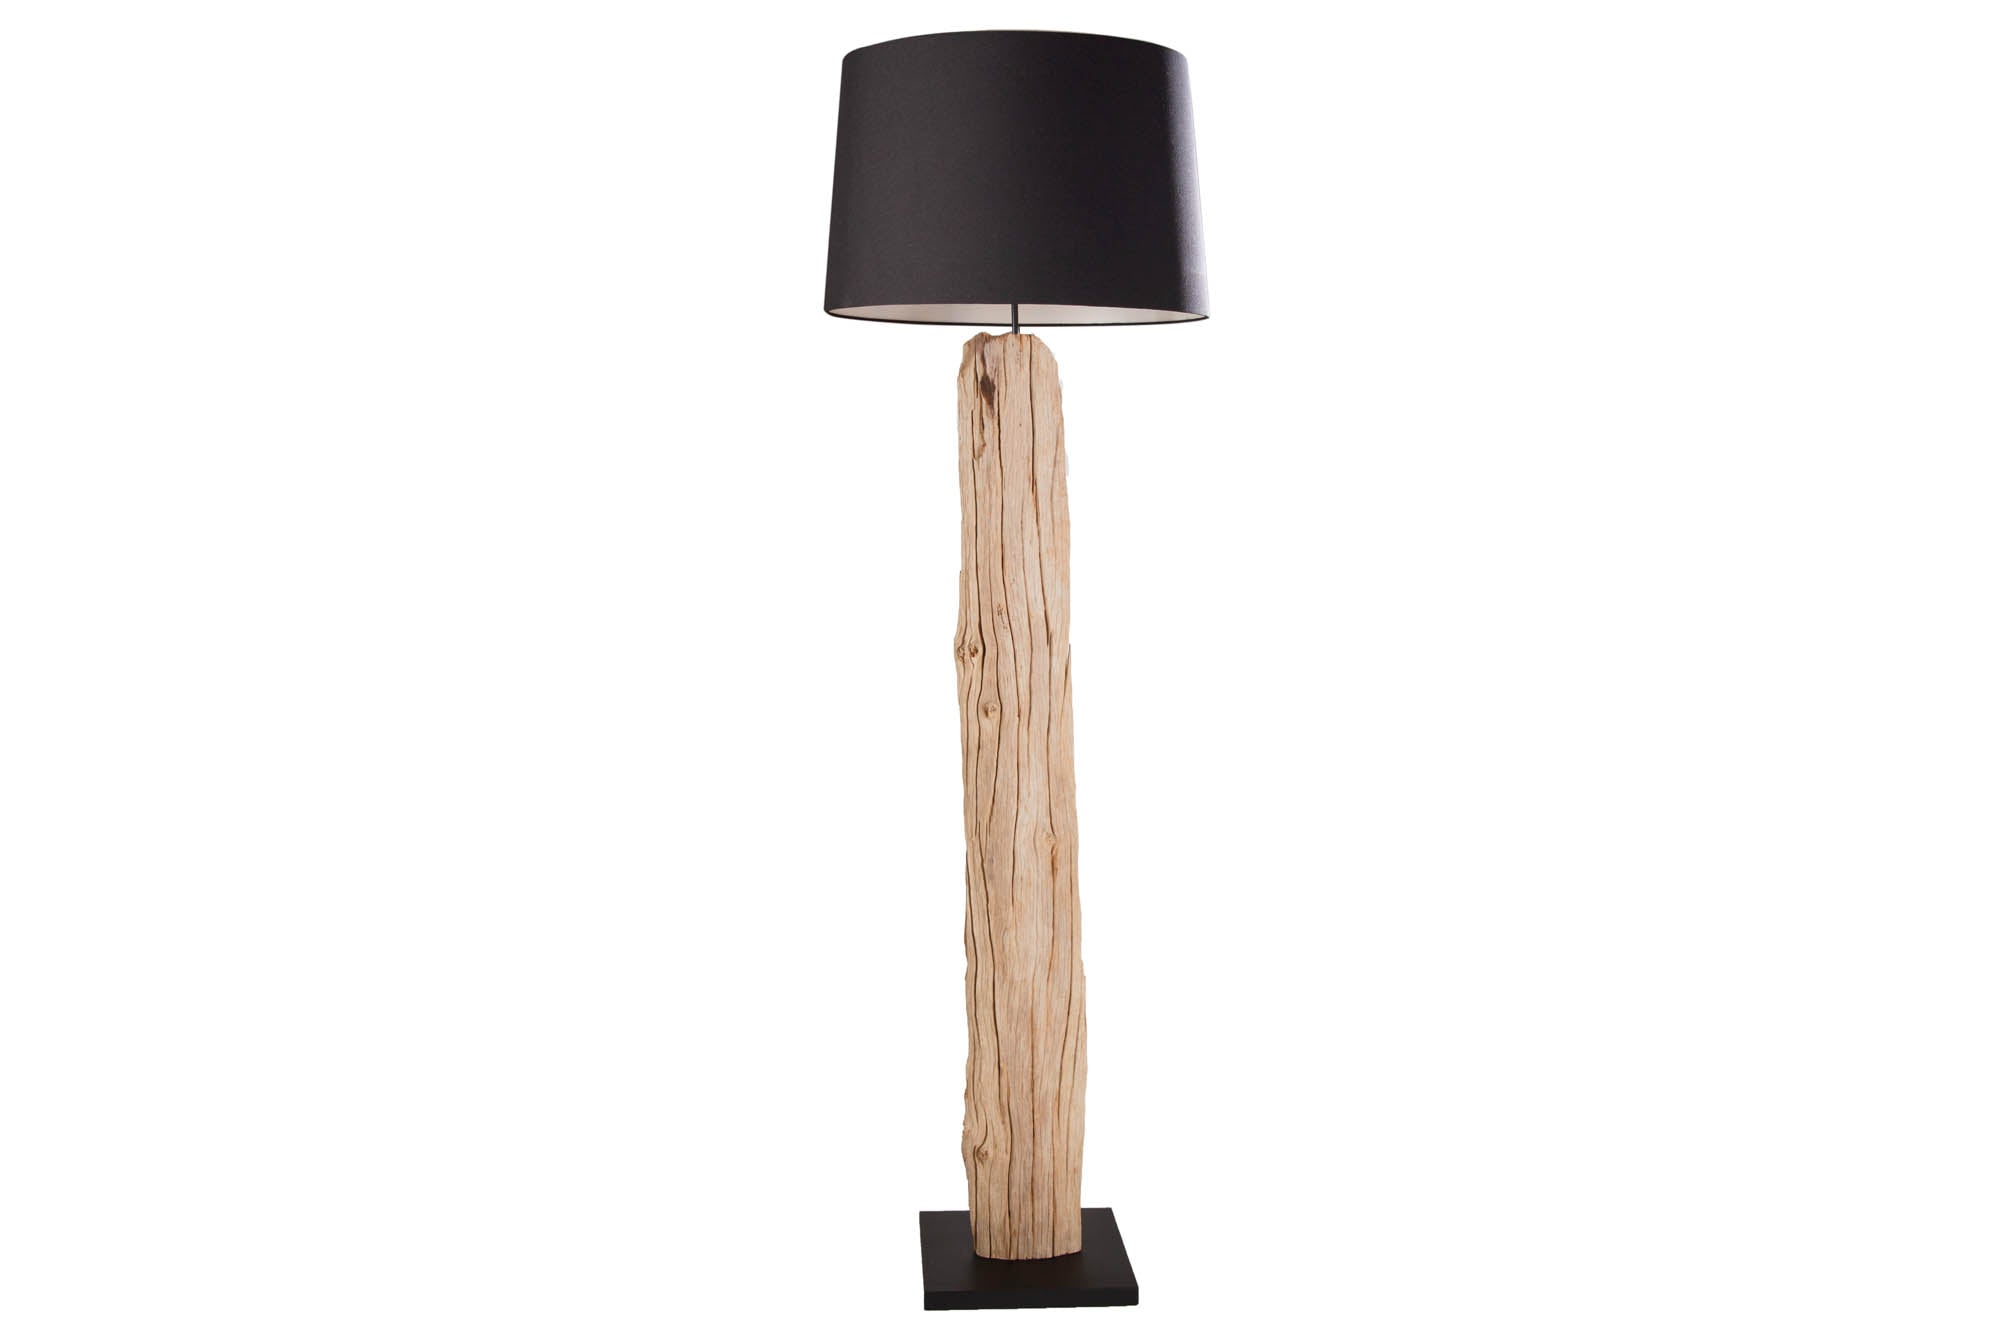 Floor Lamp Rousilique 175cm Black Driftwood